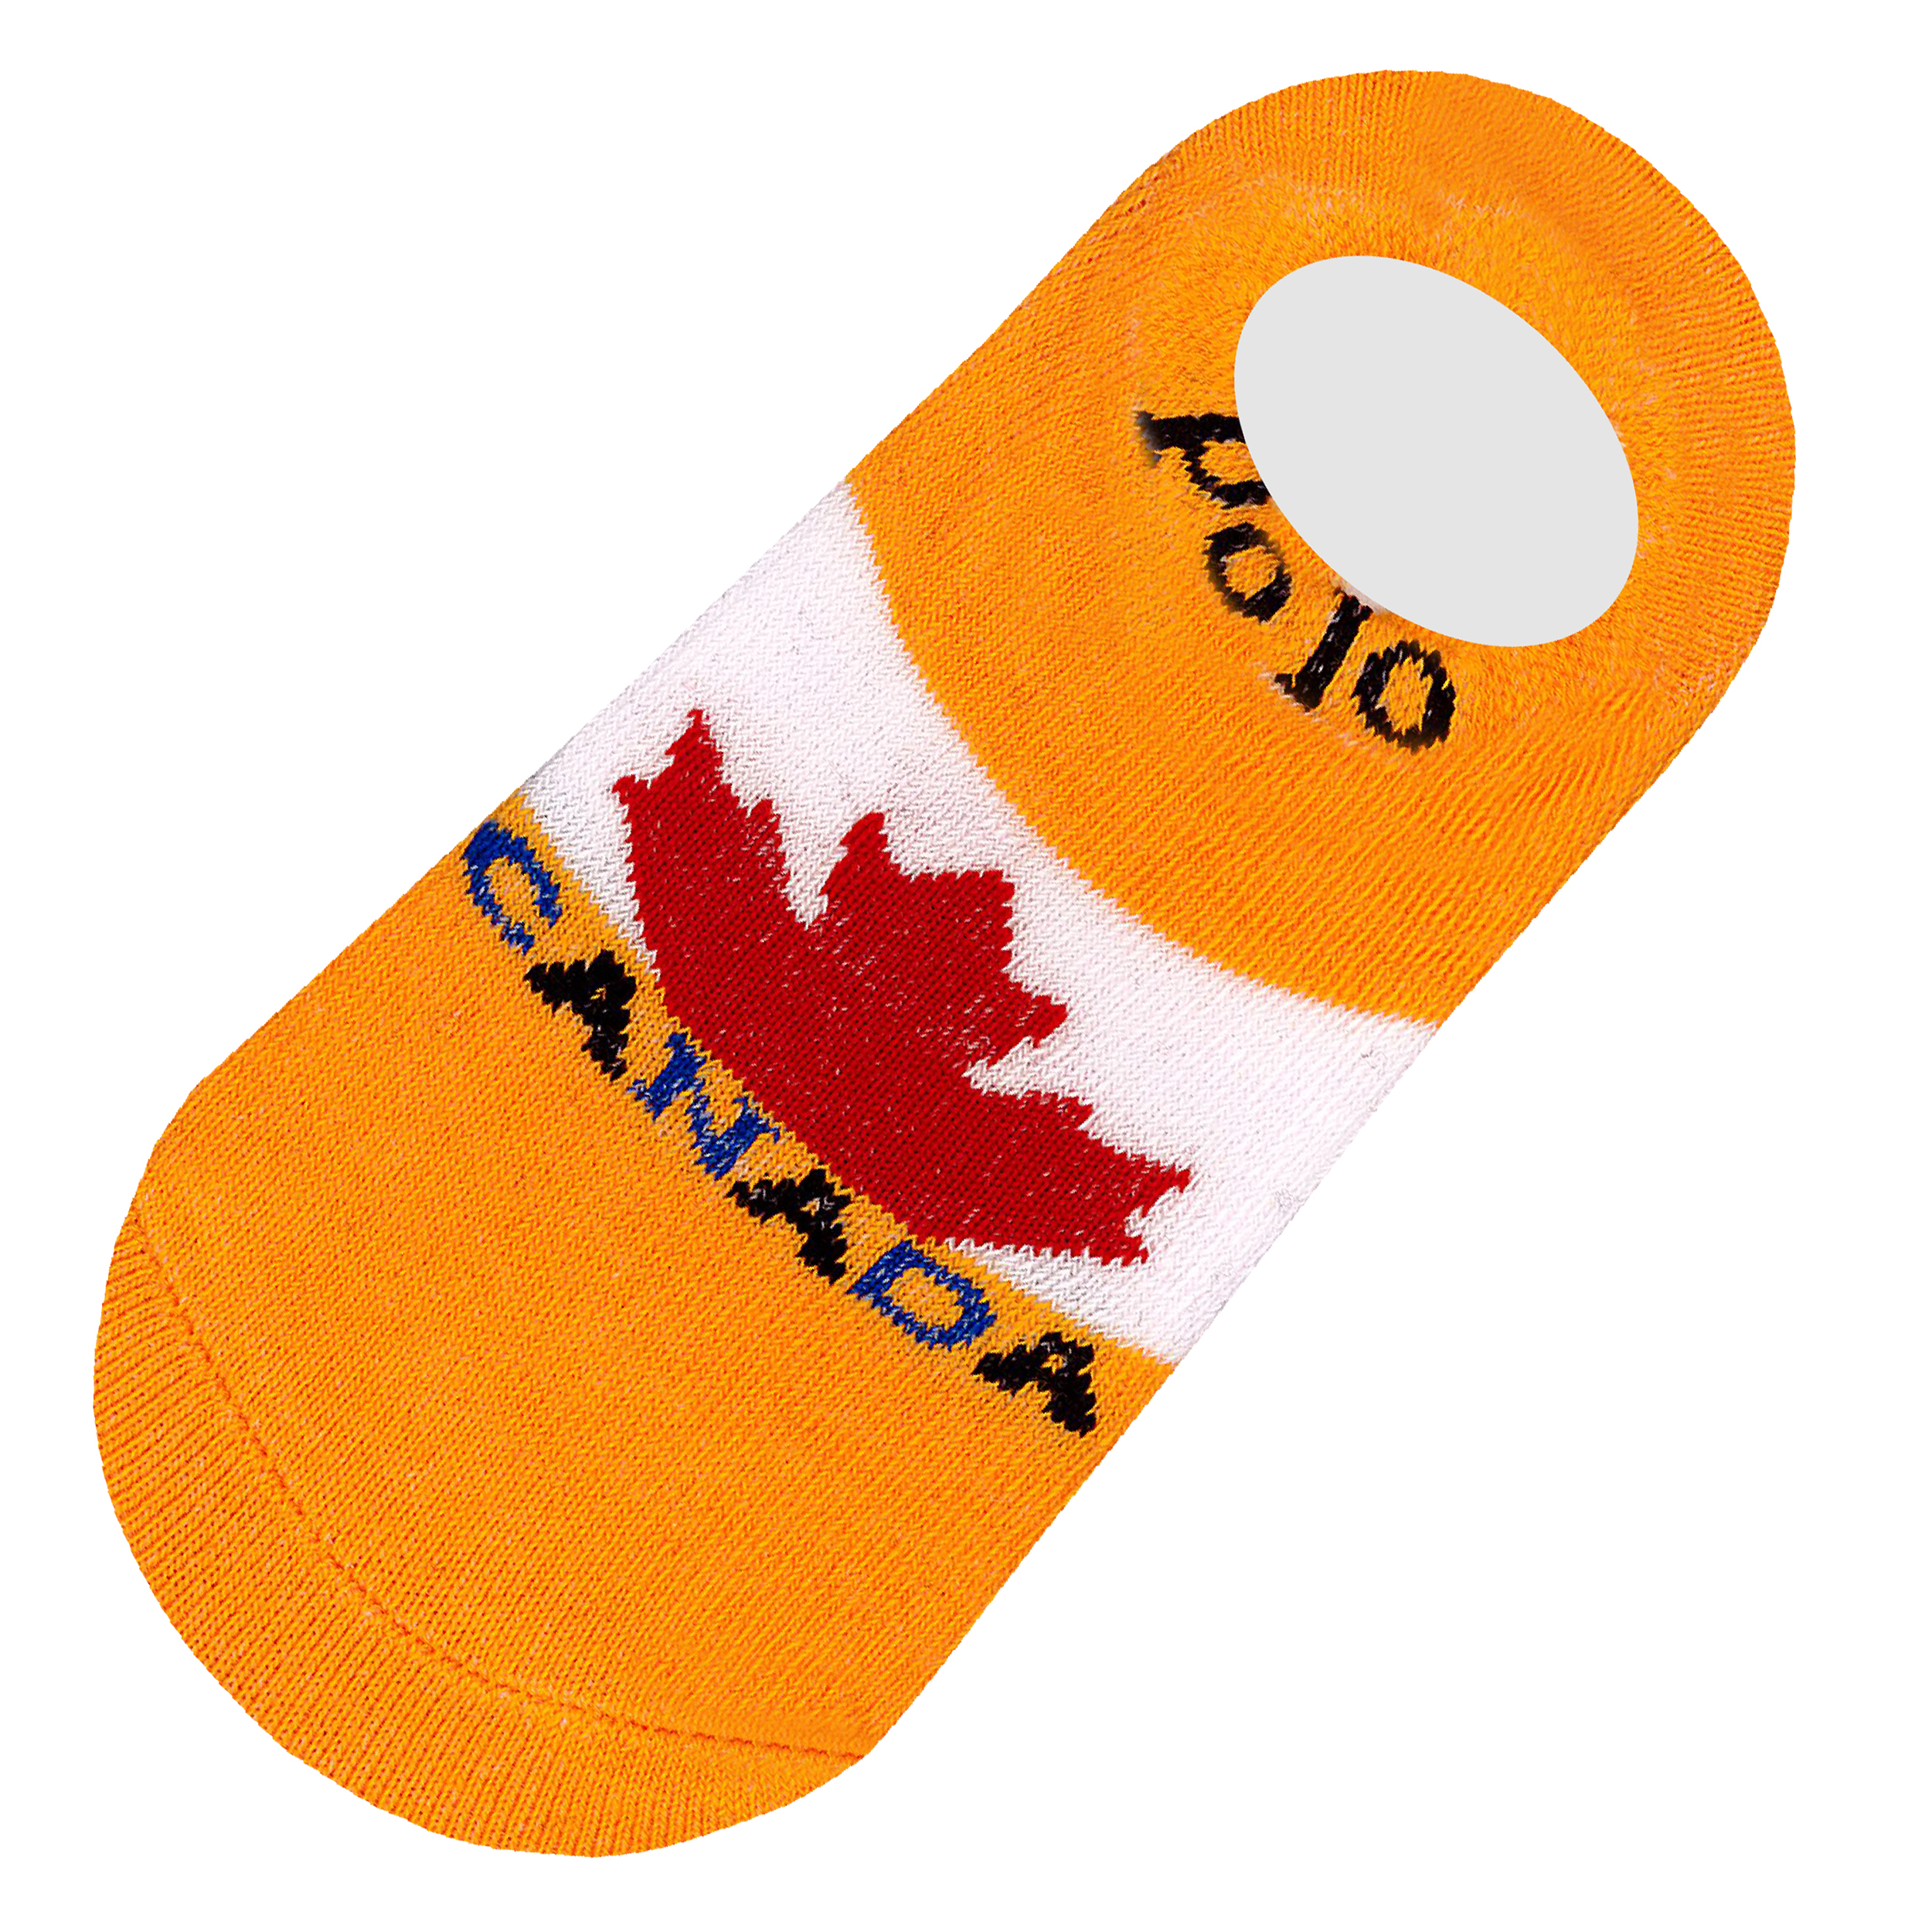 جوراب دخترانه دیزر طرح پرچم کانادا کد fiory1331